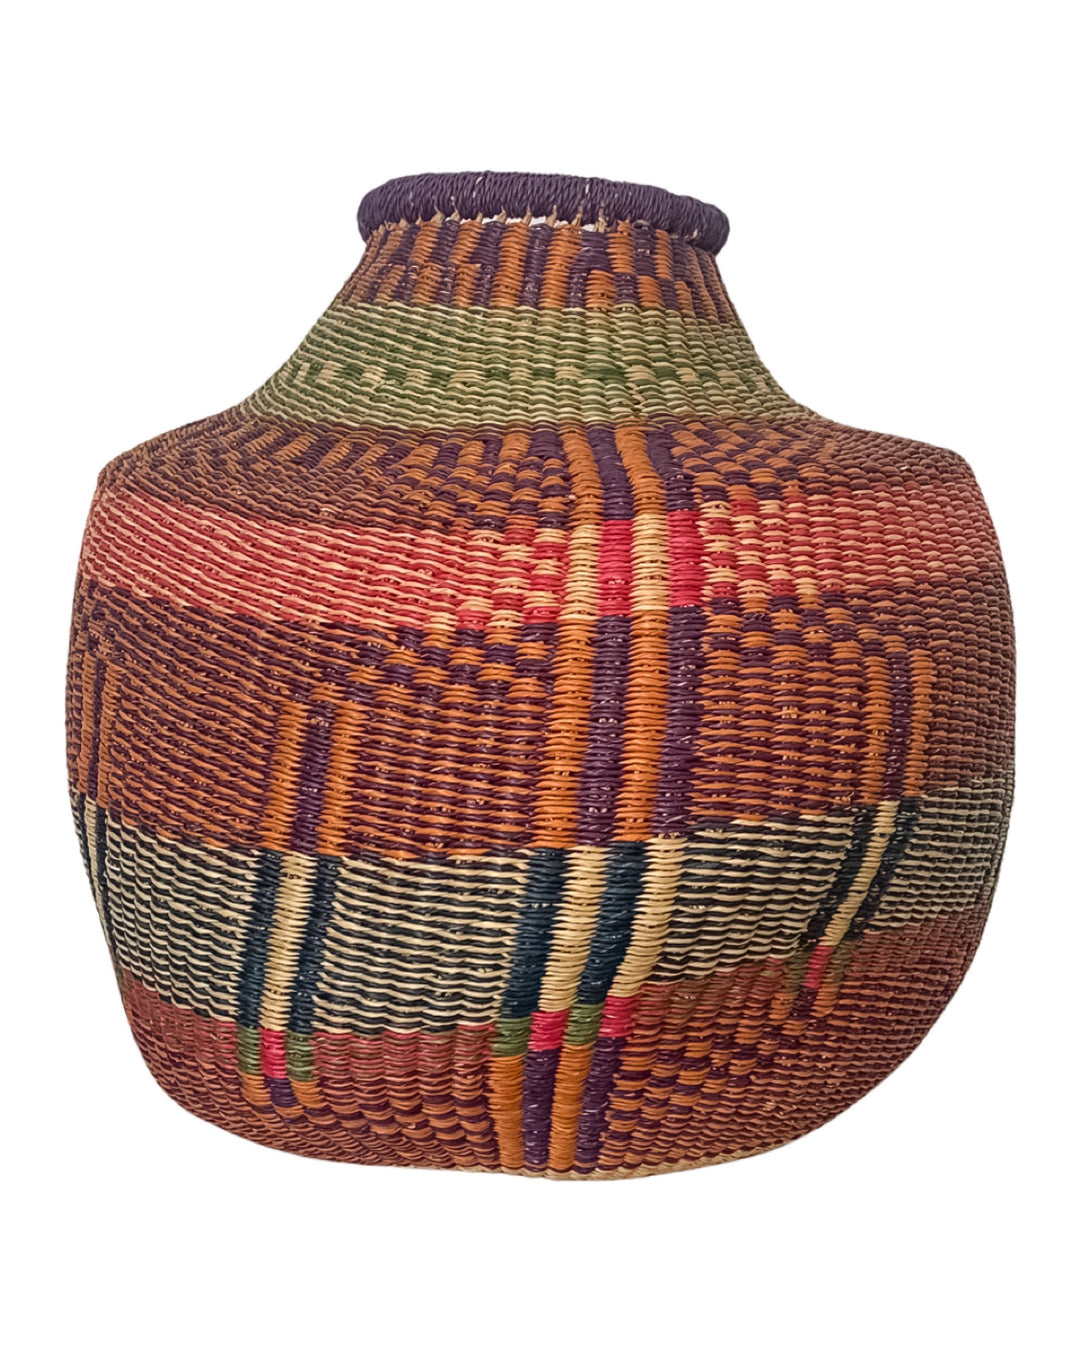 Hand-Woven Flower Pot Basket